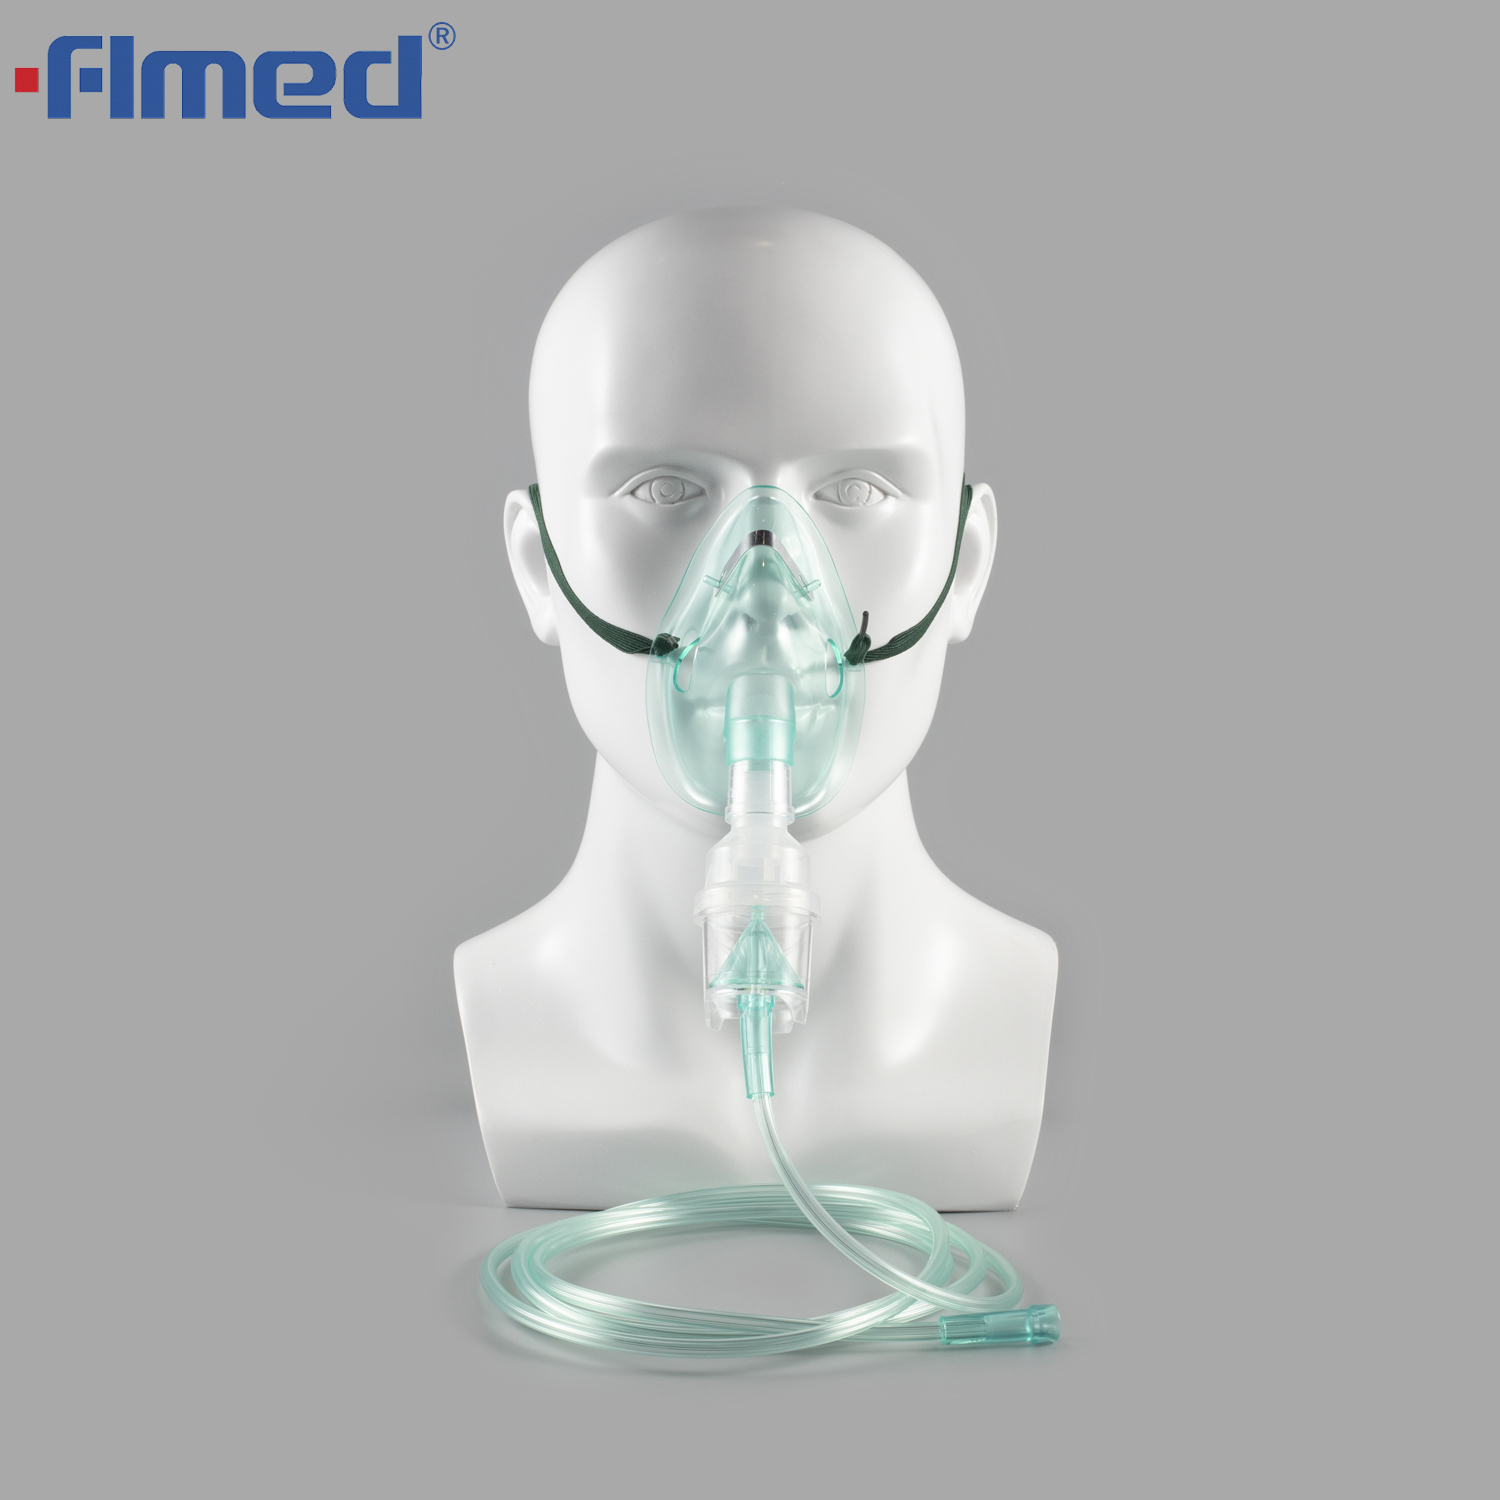 Одноразовая маска с небулайзером с трубками - размеры взрослых и педиатрии